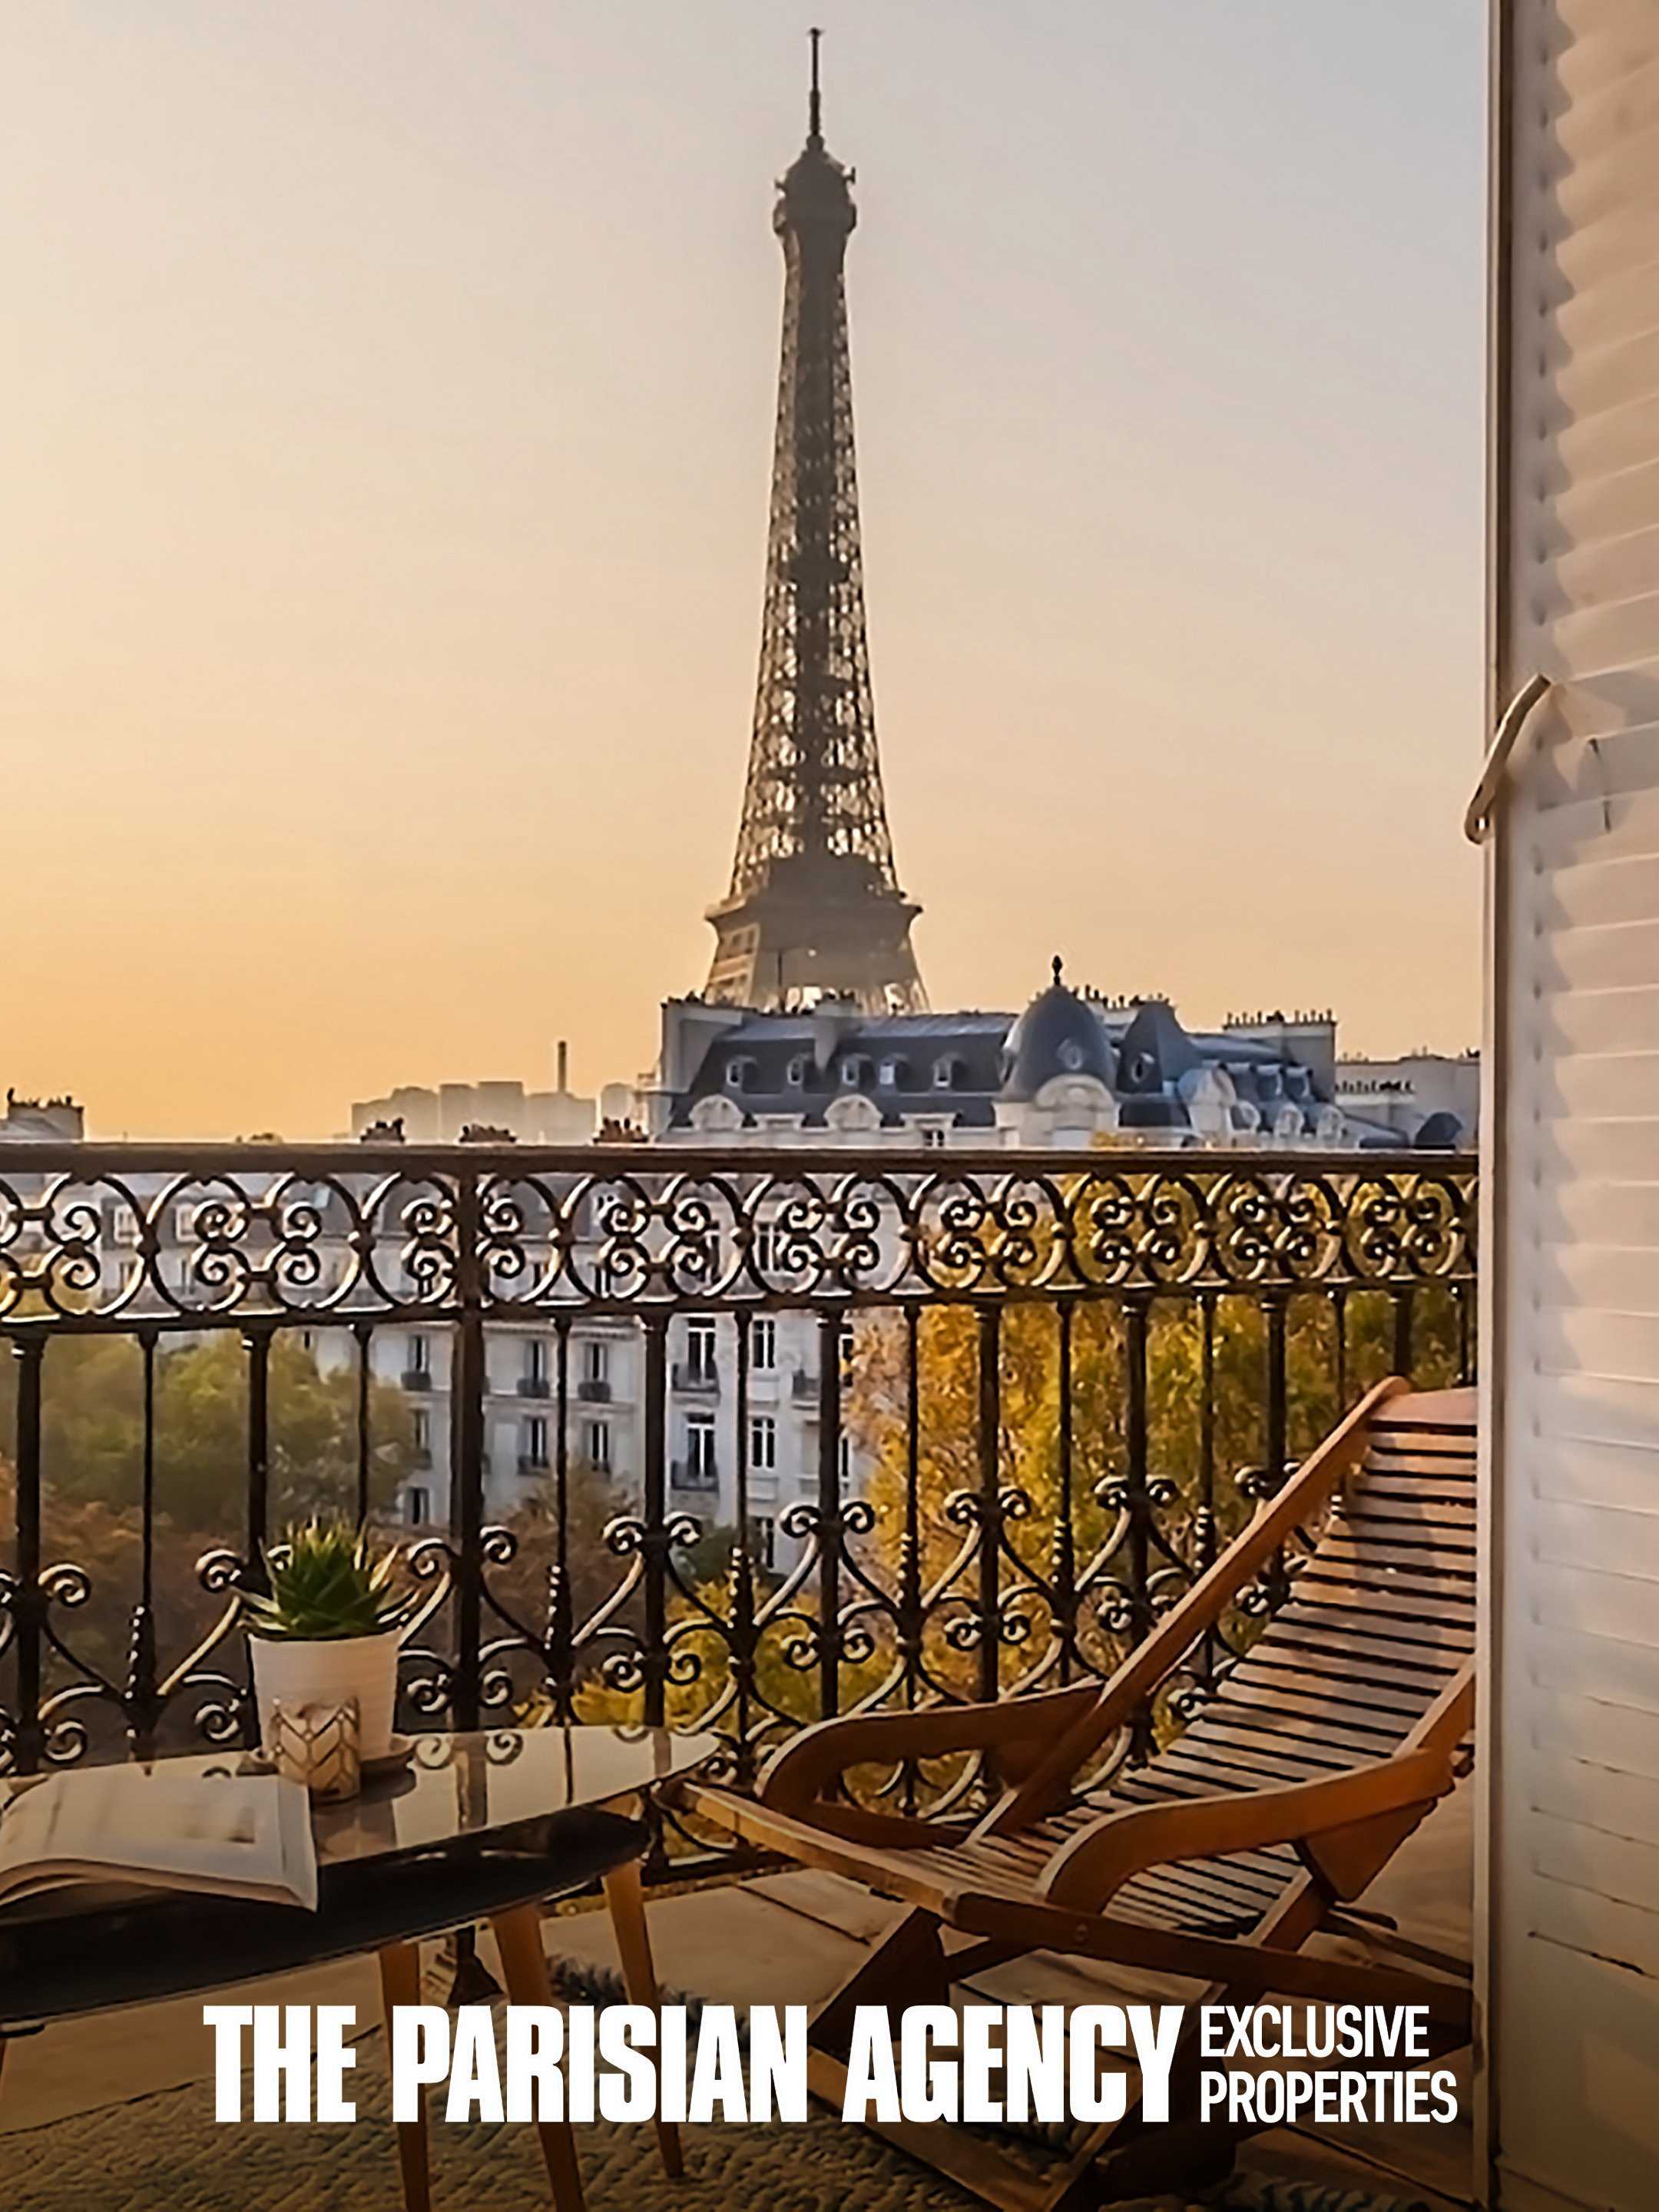 Công ty gia đình: Bất động sản hạng sang (Phần 2) - The Parisian Agency: Exclusive Properties (Season 2)